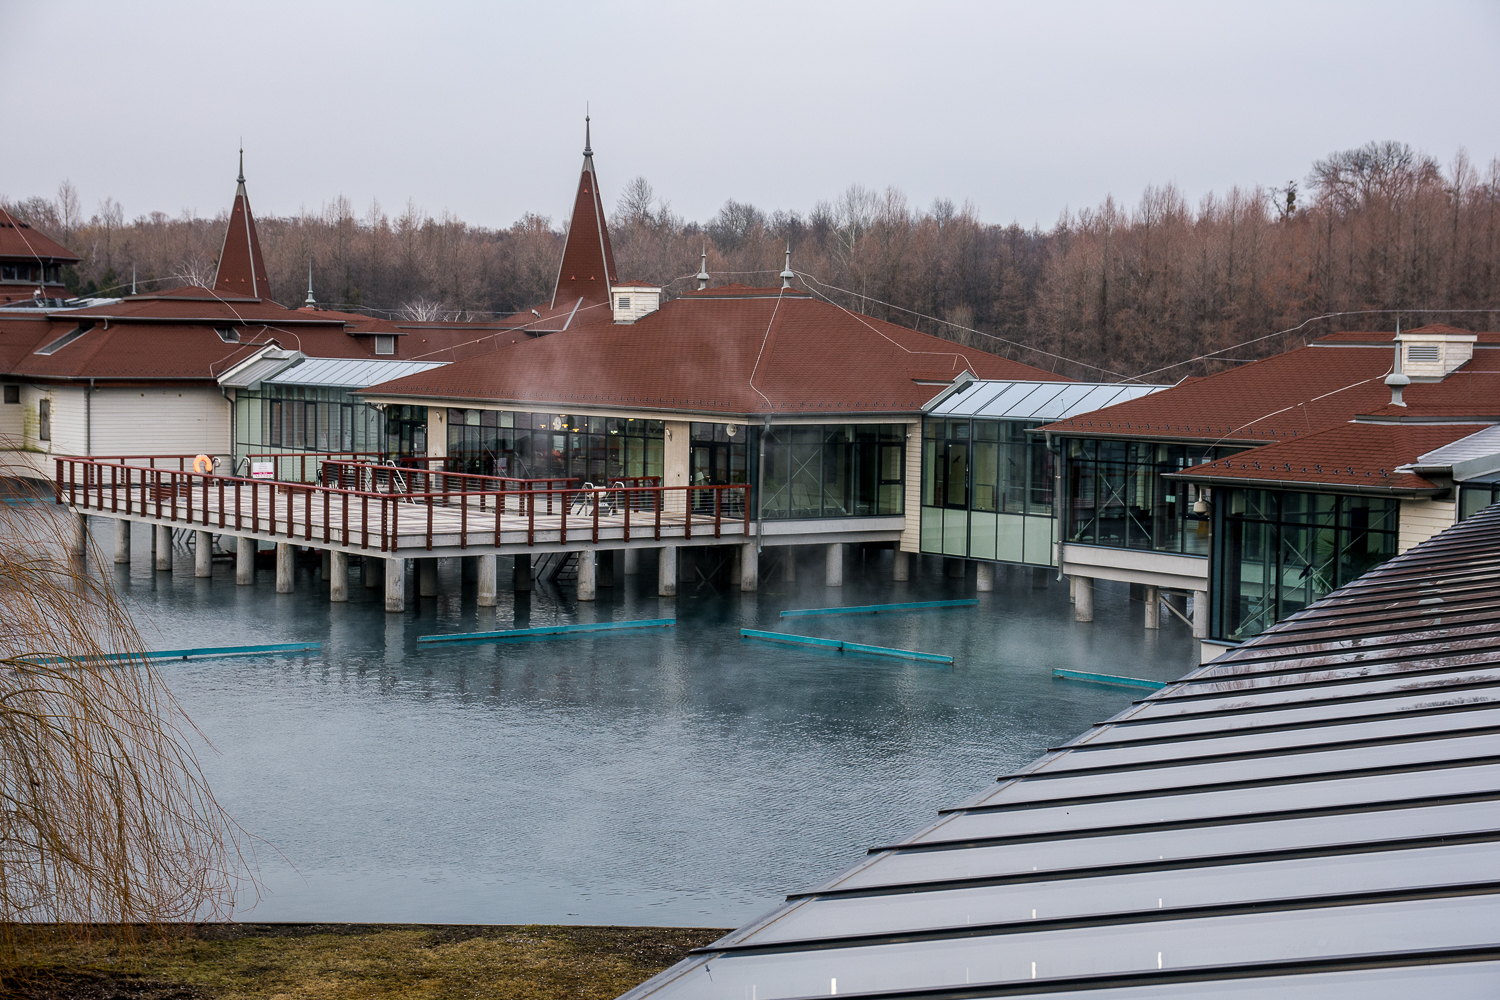 A Hévízi-tó a legjobb európai fürdők között: A harmadik helyet kapta a Lonely Planet válogatásában